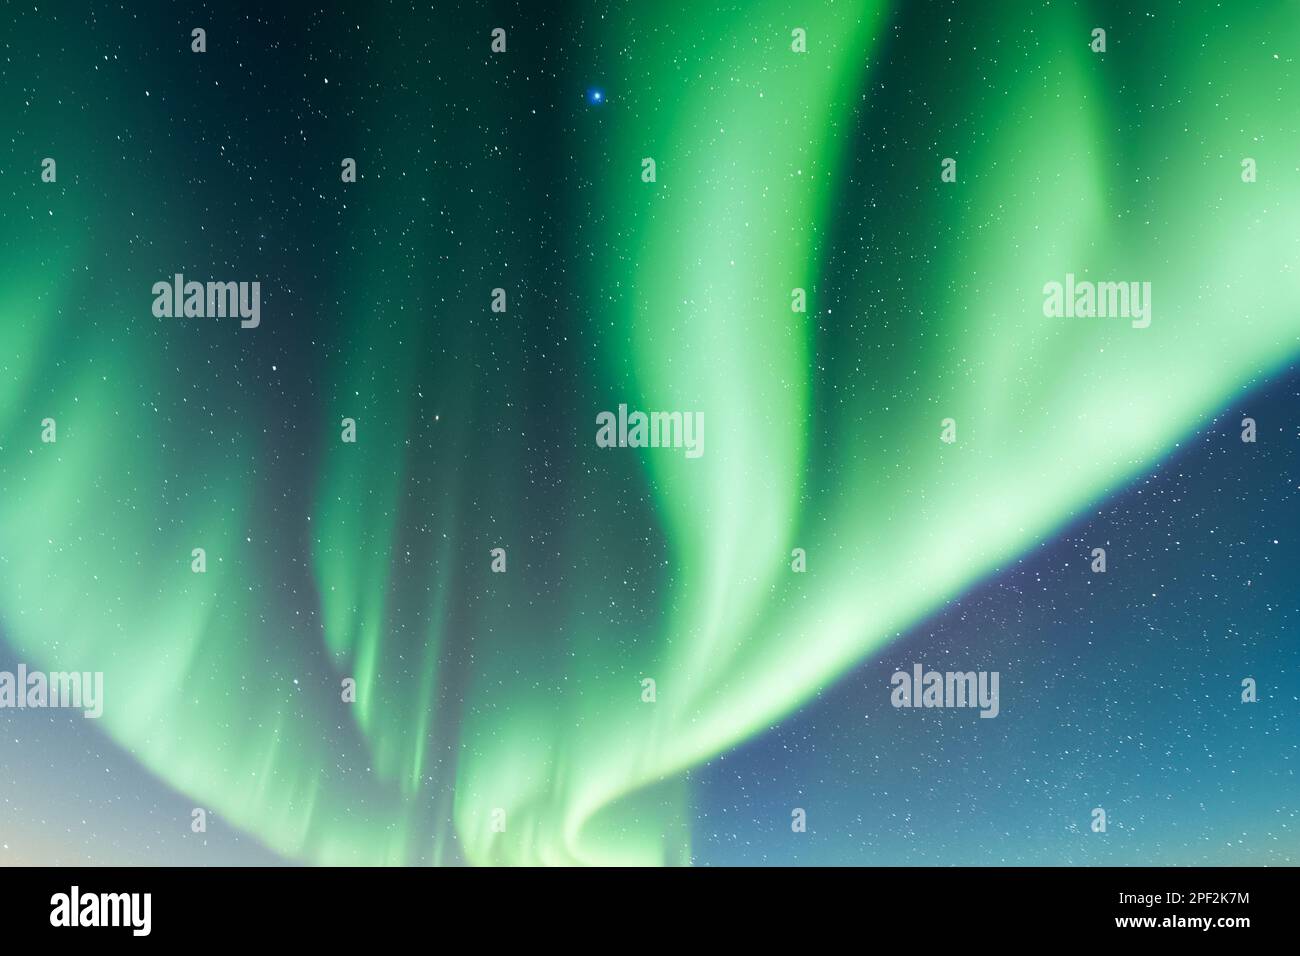 Aurora borealis Nordlichter am nächtlichen Winterhimmel. Himmel mit grünen Polarlichtern und Sternen. Landschaftsfotografie Stockfoto